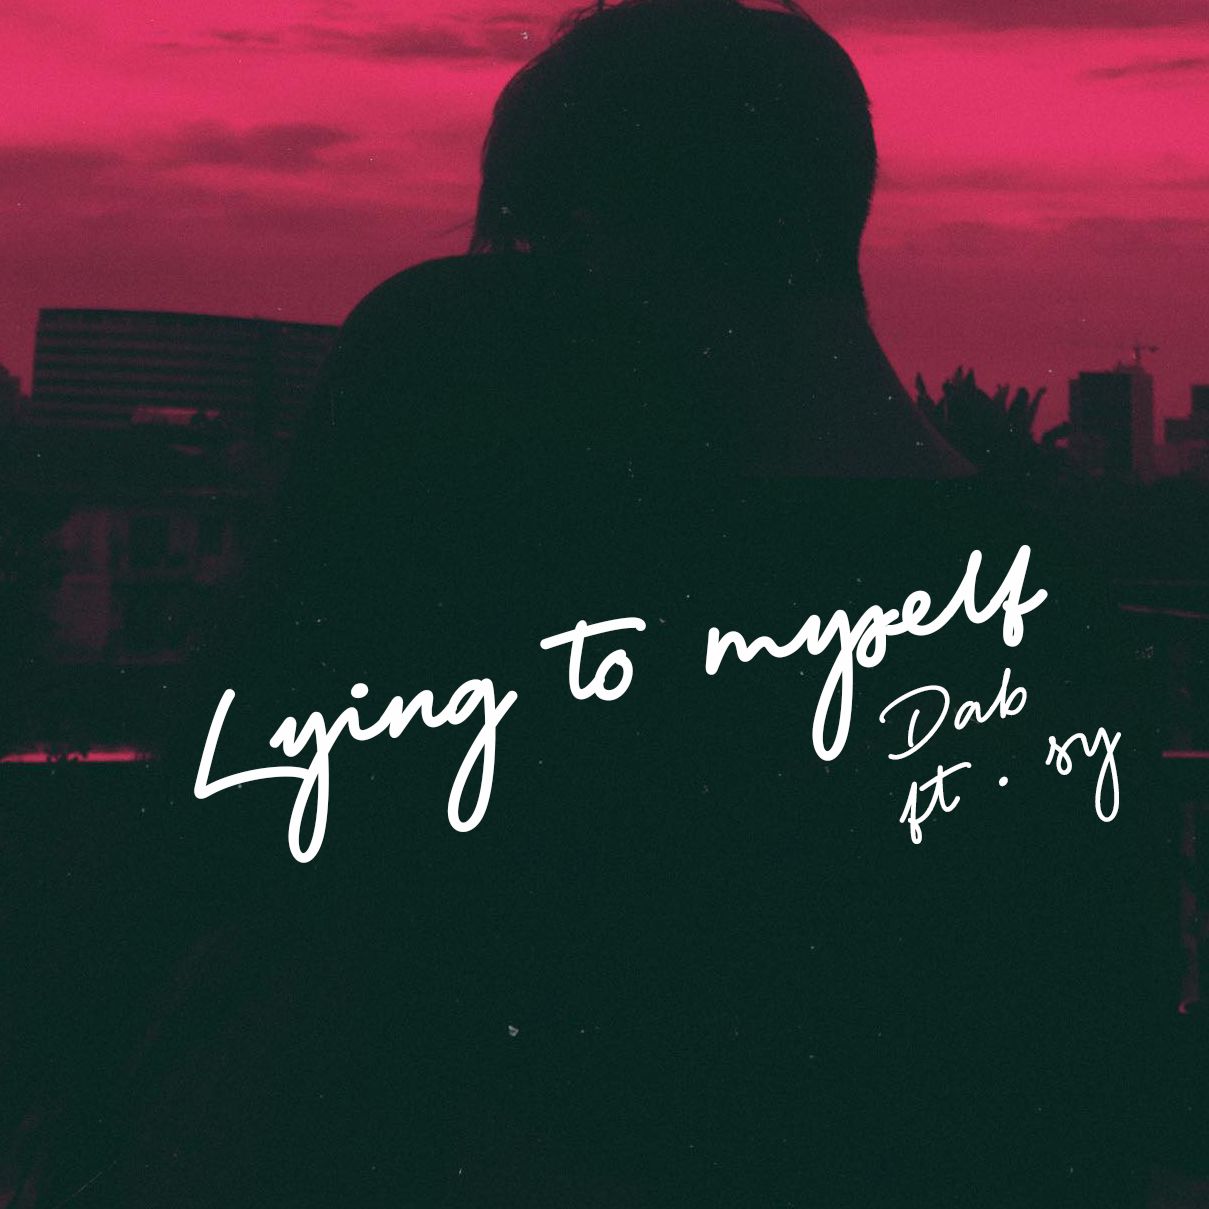 Lae alla Dab - Lying to myself (feat. sy)